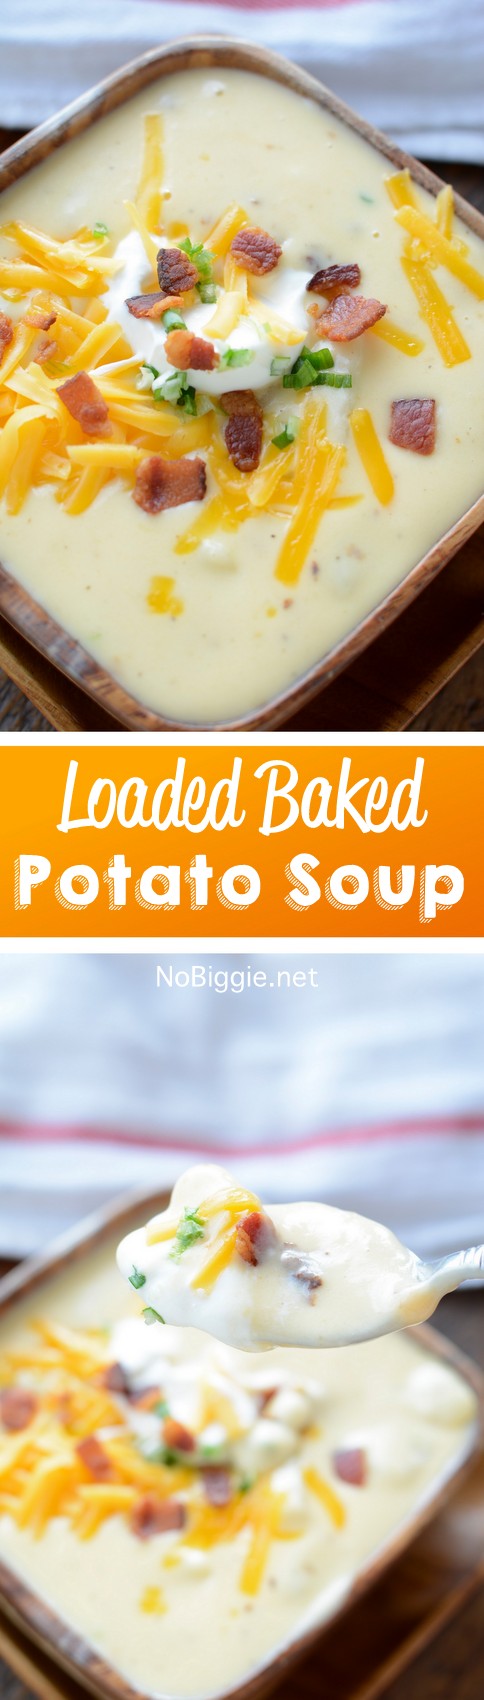 http://www.nobiggie.net/wp-content/uploads/2016/03/loaded-baked-potato-soup-recipe.jpg